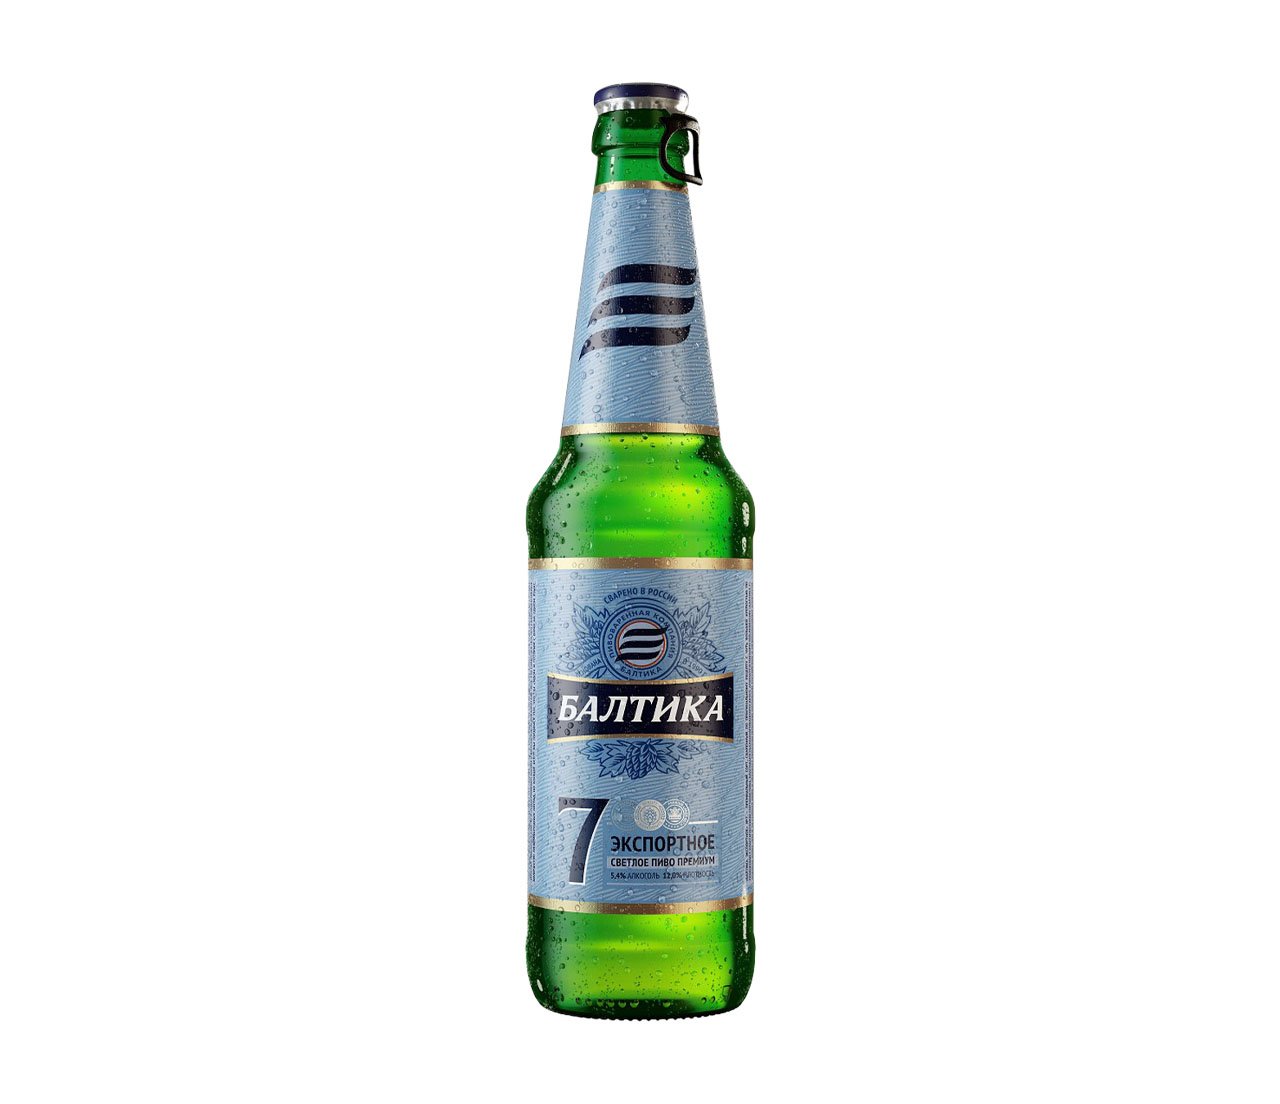 Beer 7. Пиво Балтика 7 Экспортное. Пиво светлое Балтика №7 Экспортное 0.47 л. Пиво Балтика №7 0,47л.